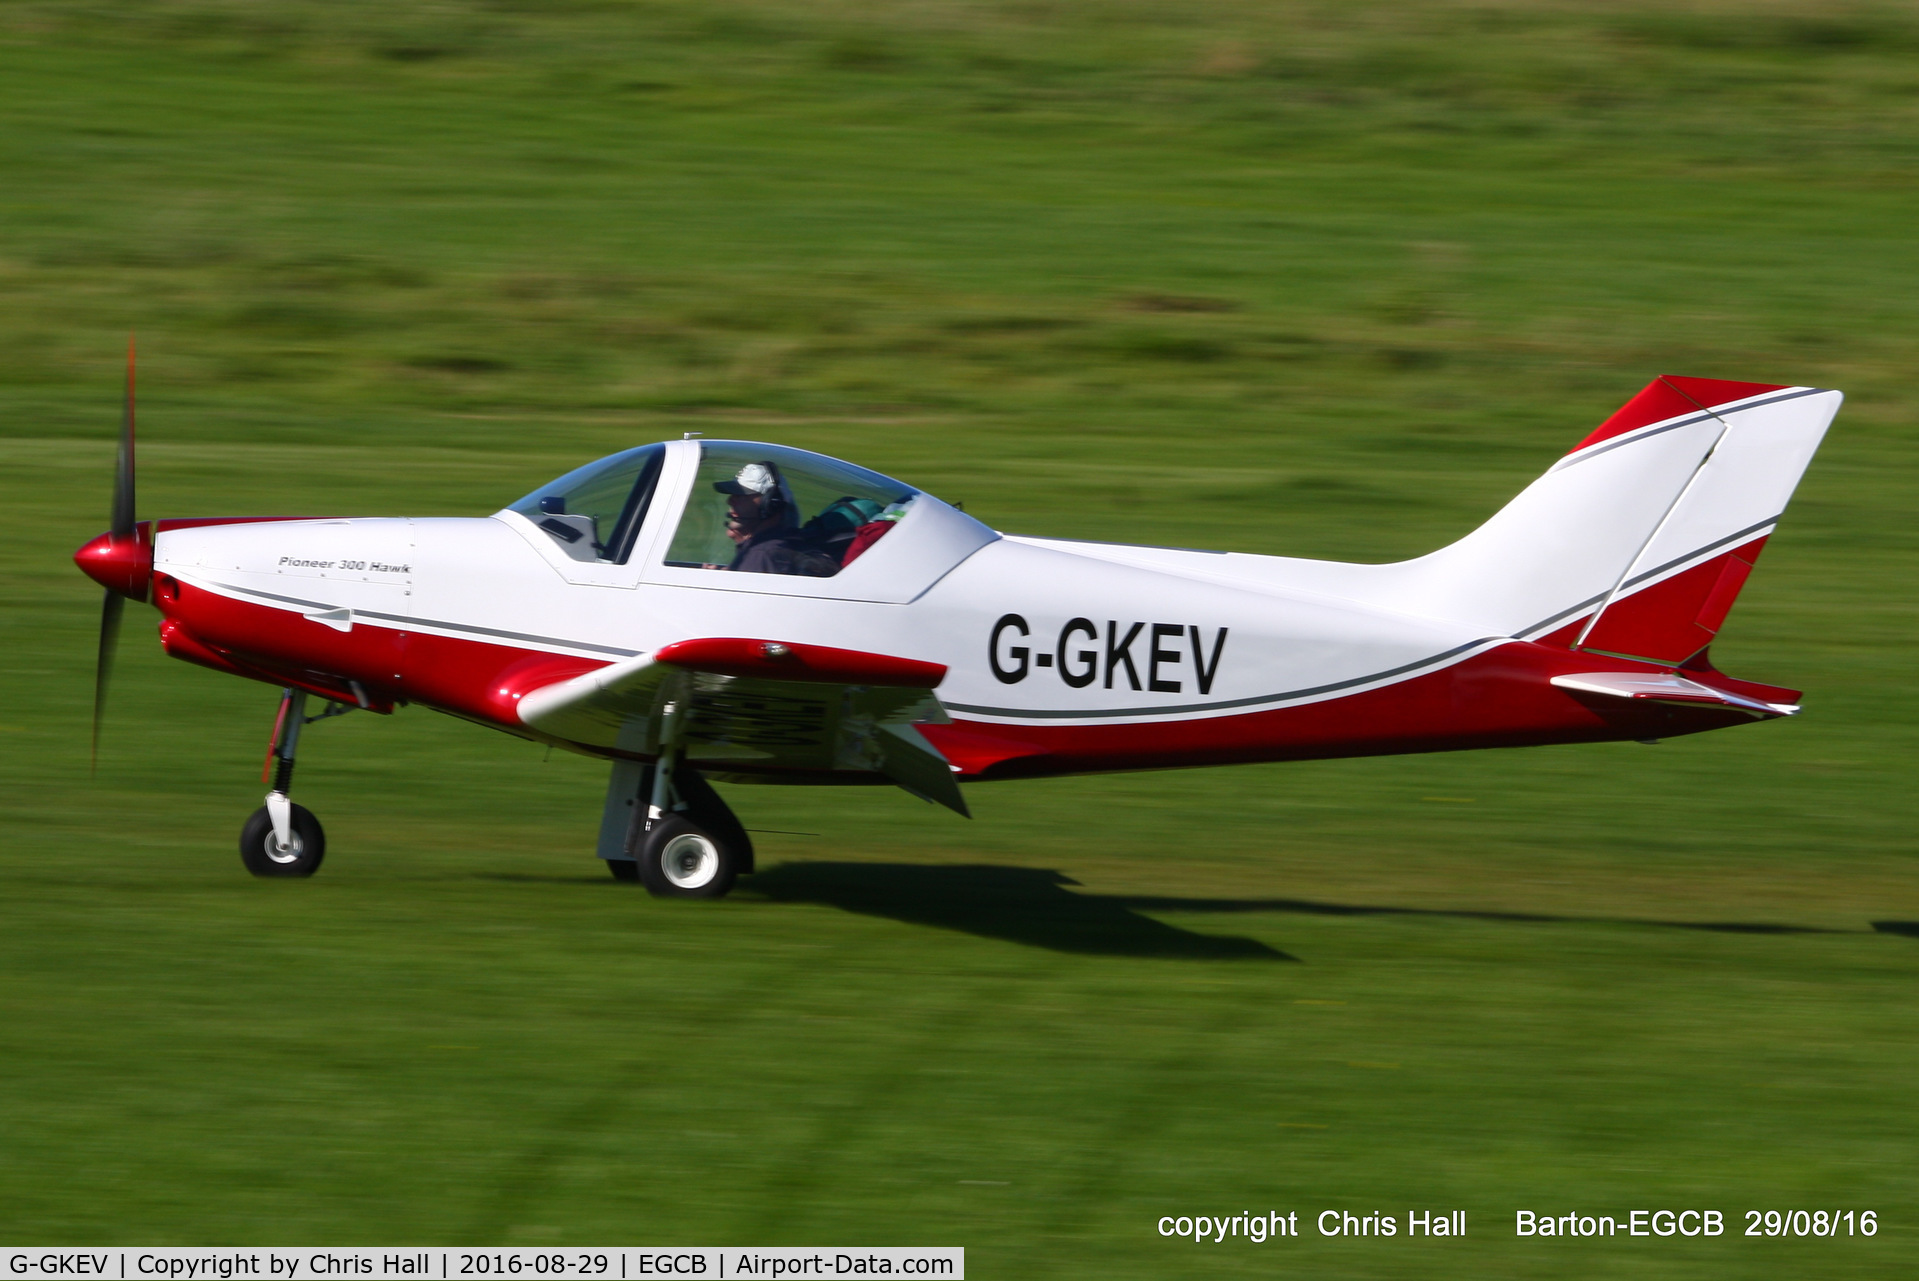 G-GKEV, 2010 Alpi Aviation Pioneer 300 Hawk C/N LAA 330A-14965, at Barton